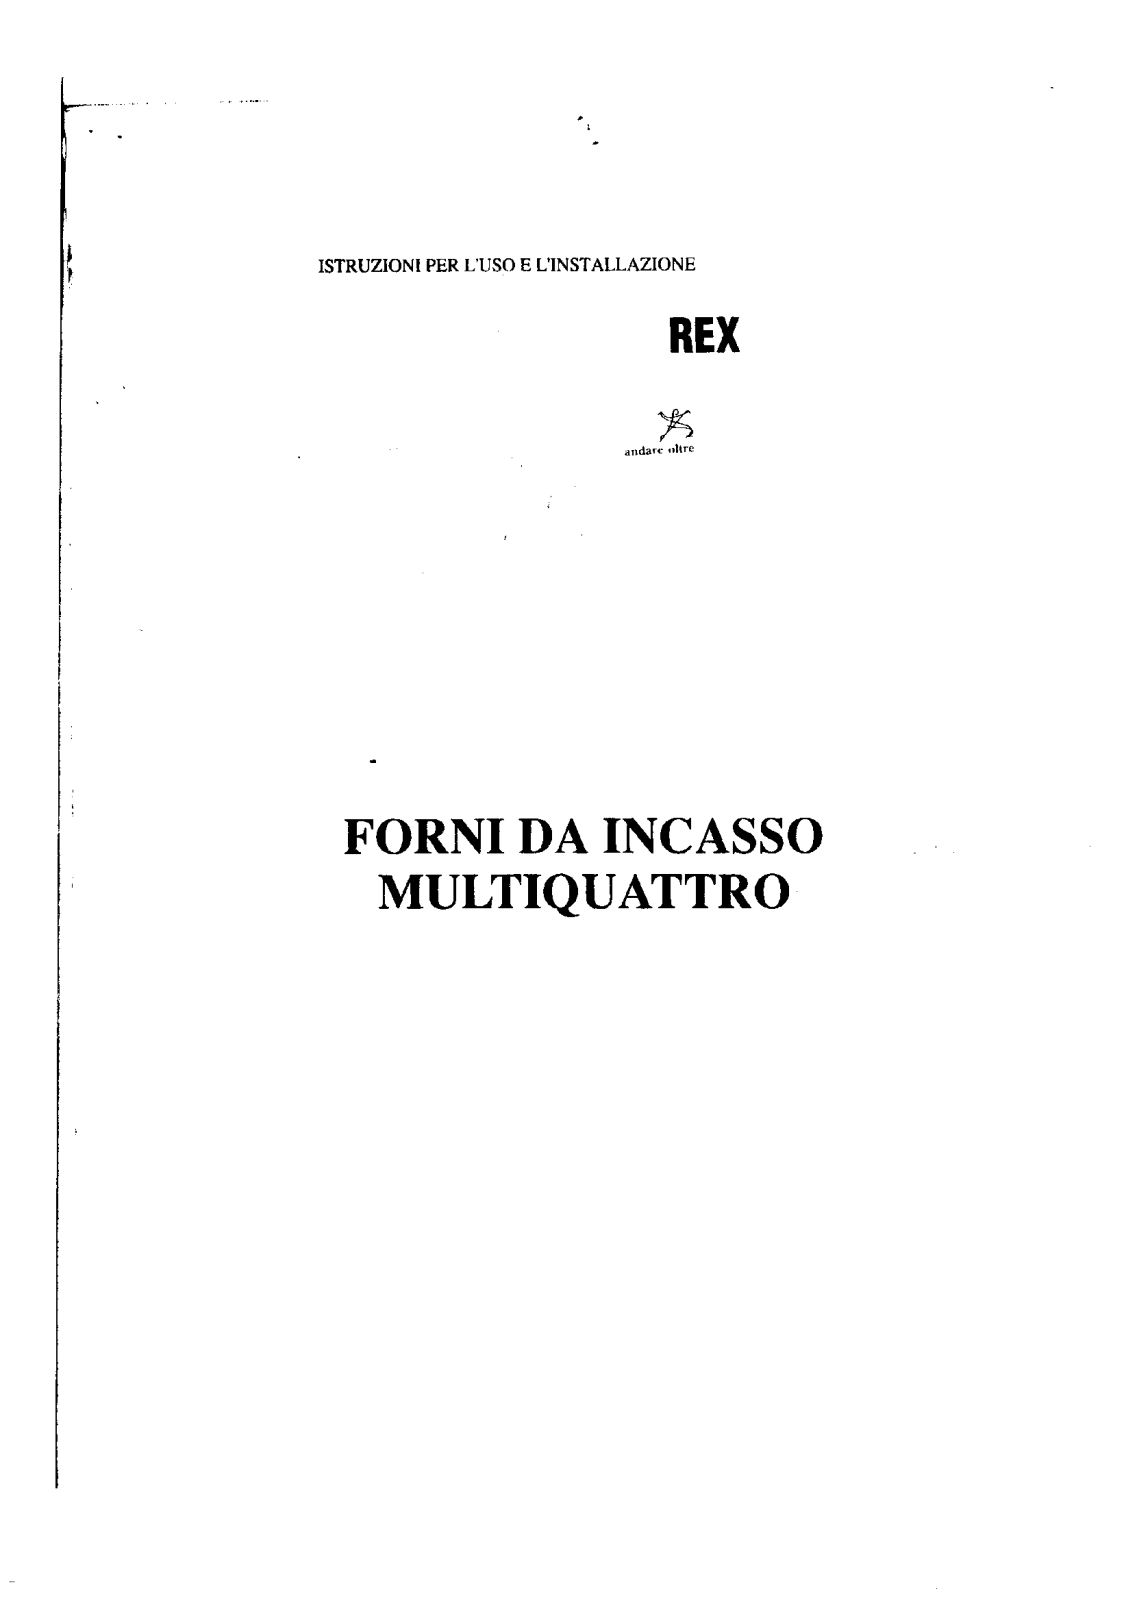 Rex FMU4M, FMU4B, FMU4X, FMU4N User Manual